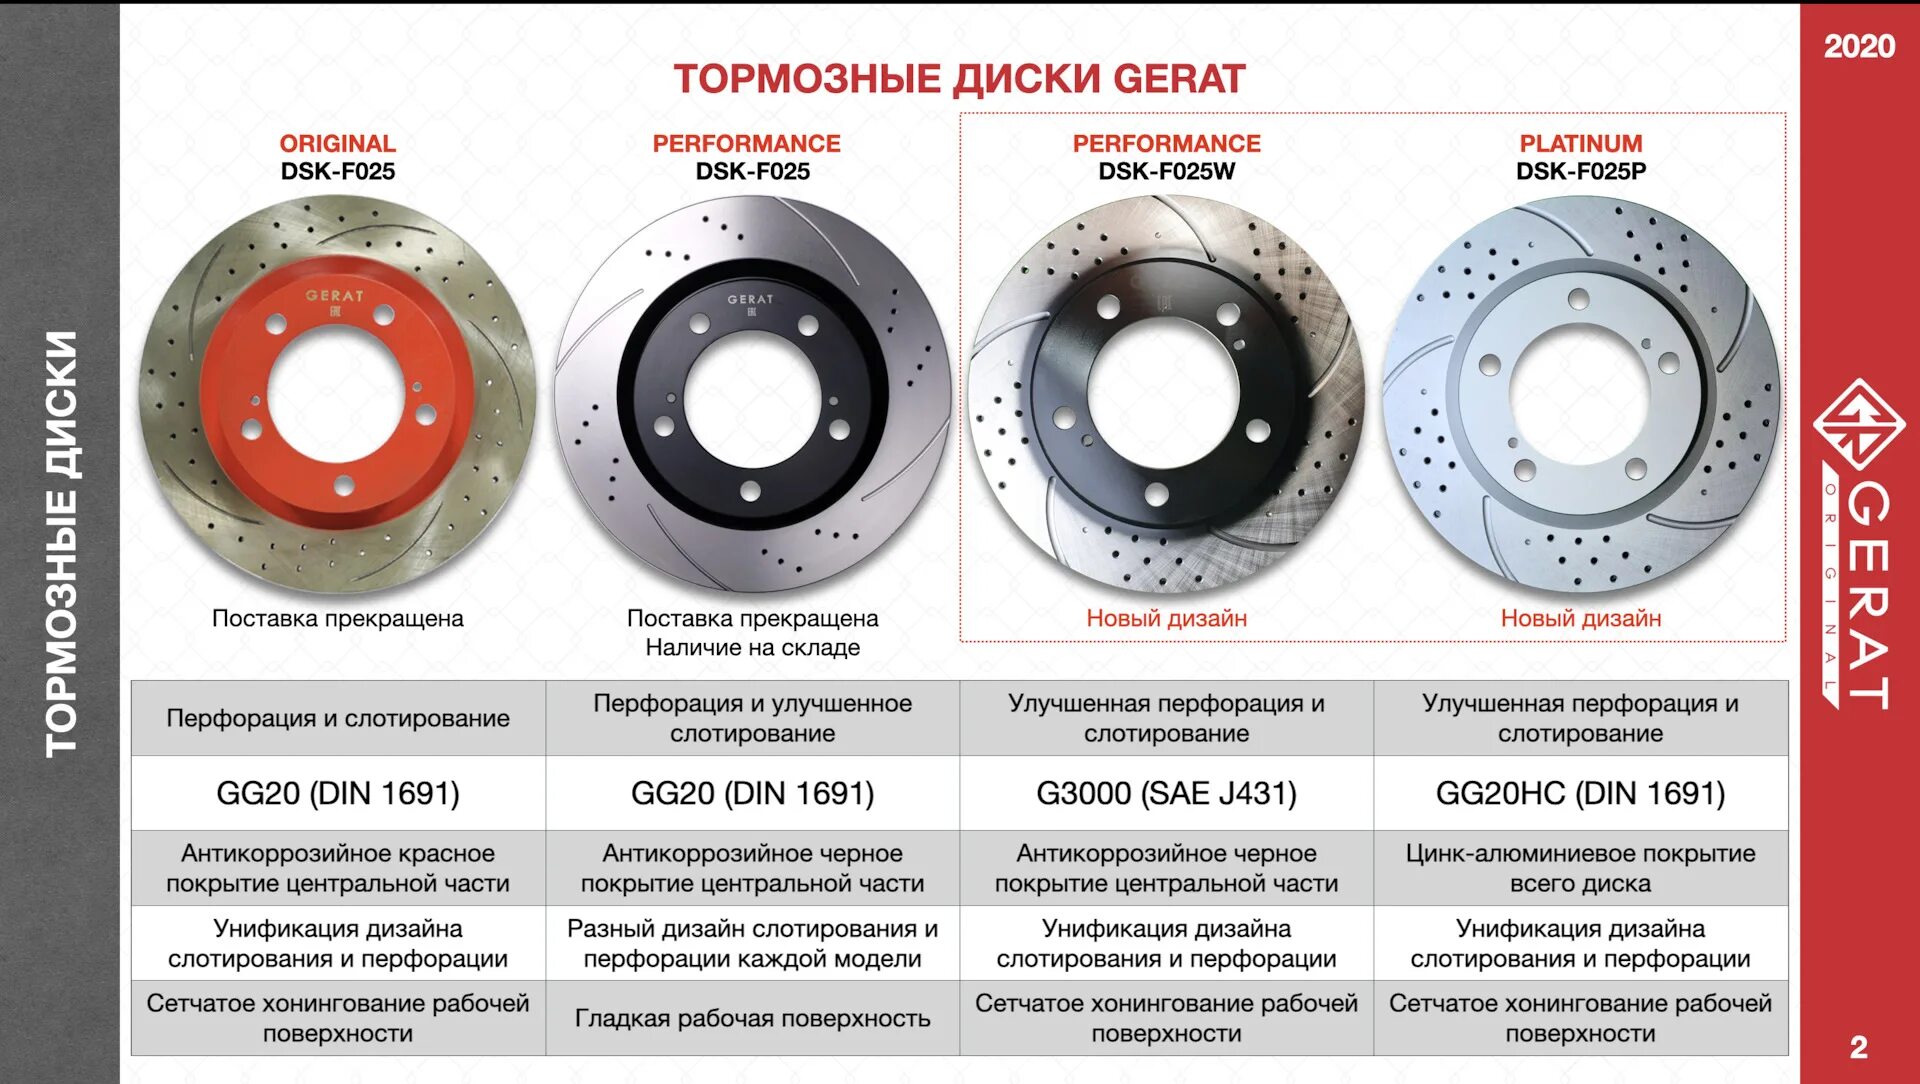 Тормозные диски герат отзывы. Перфорированные тормозные диски Герат. Gerat Platinum тормозные диски. Тормозной диск Gerat DSK-f166p (передний) Platinum. Тормозные диски Gerat на Мерседес.